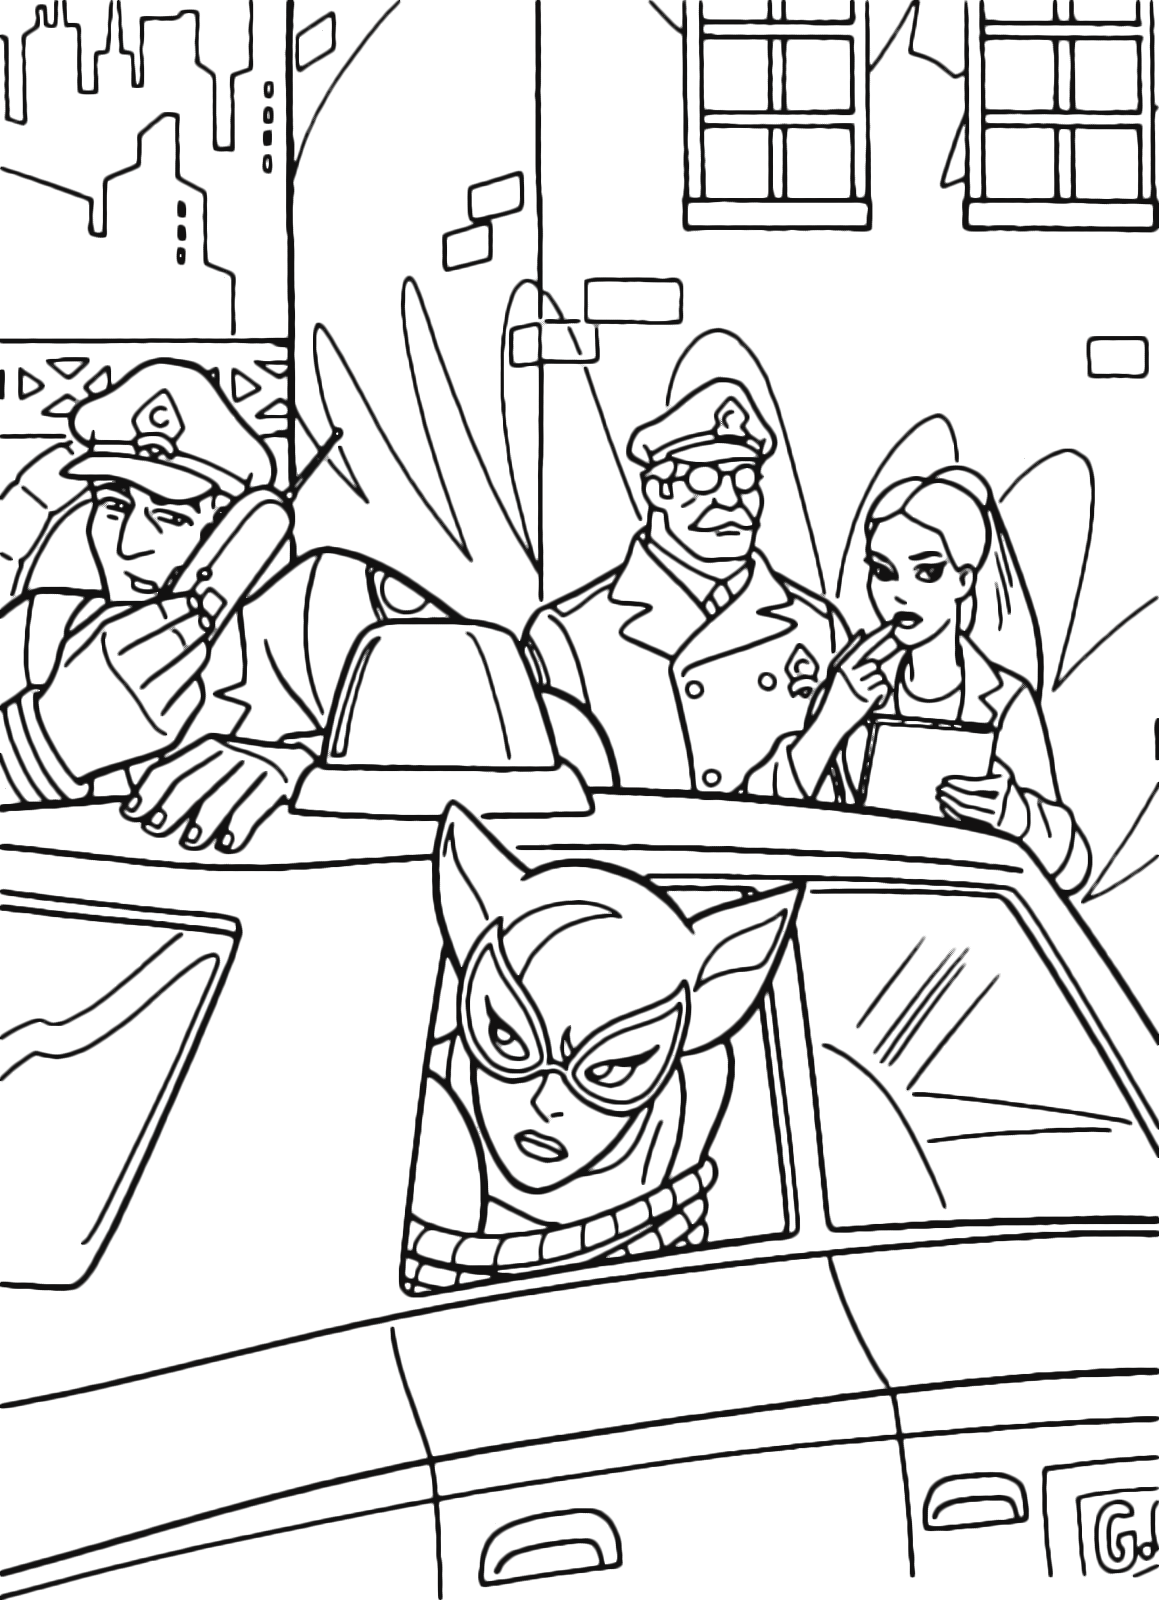 Batman - Catwoman nella macchina della polizia